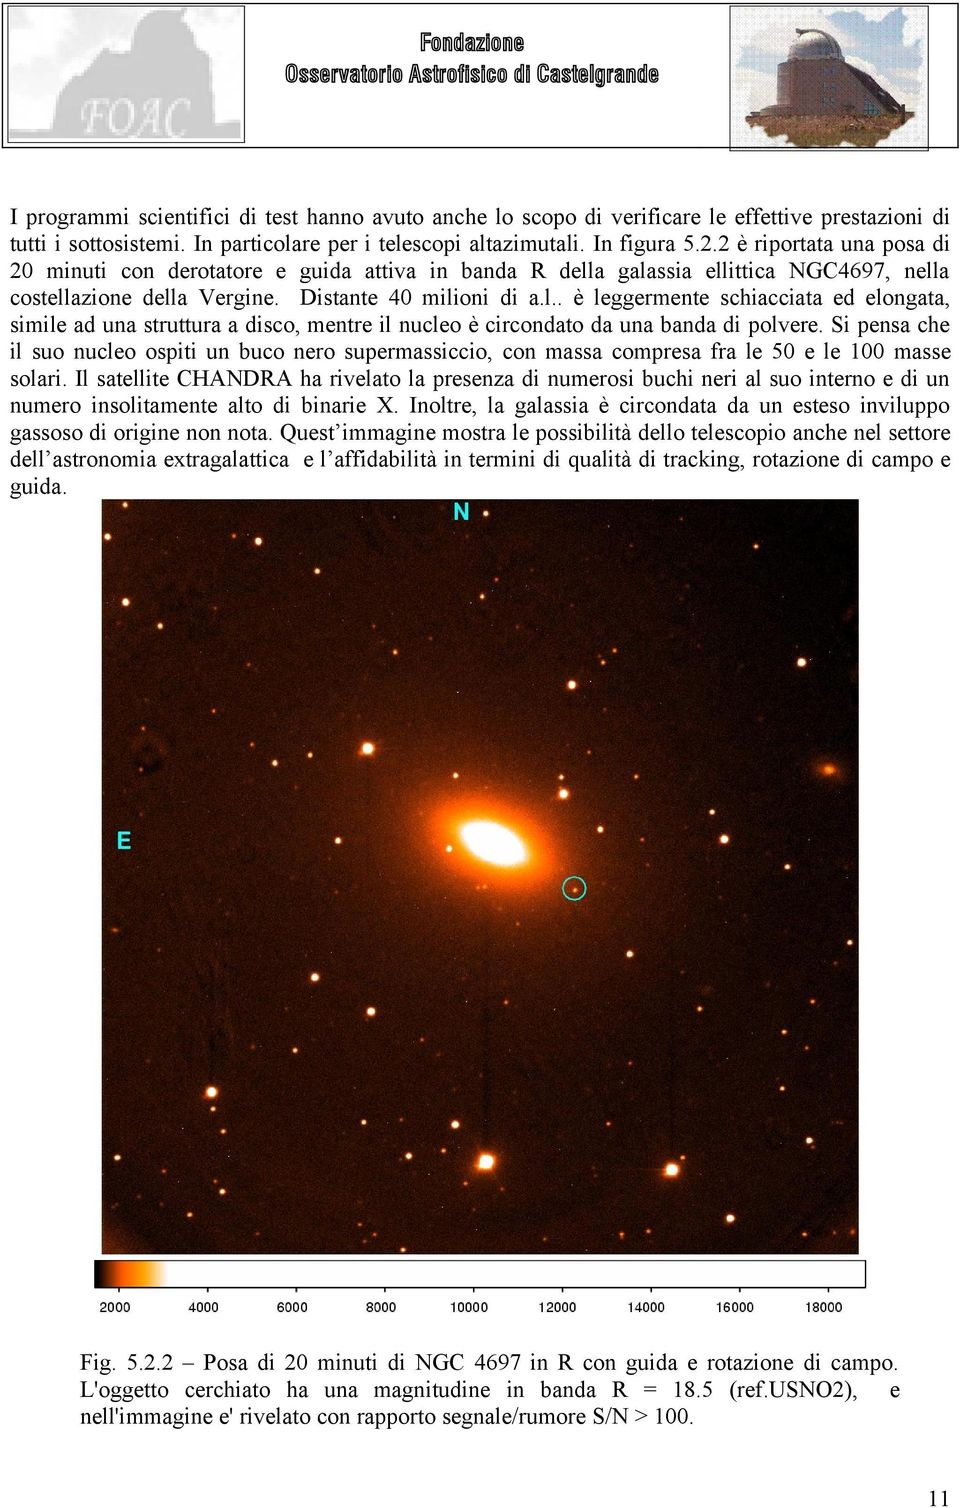 a galassia ellittica NGC4697, nella costellazione della Vergine. Distante 40 milioni di a.l.. è leggermente schiacciata ed elongata, simile ad una struttura a disco, mentre il nucleo è circondato da una banda di polvere.